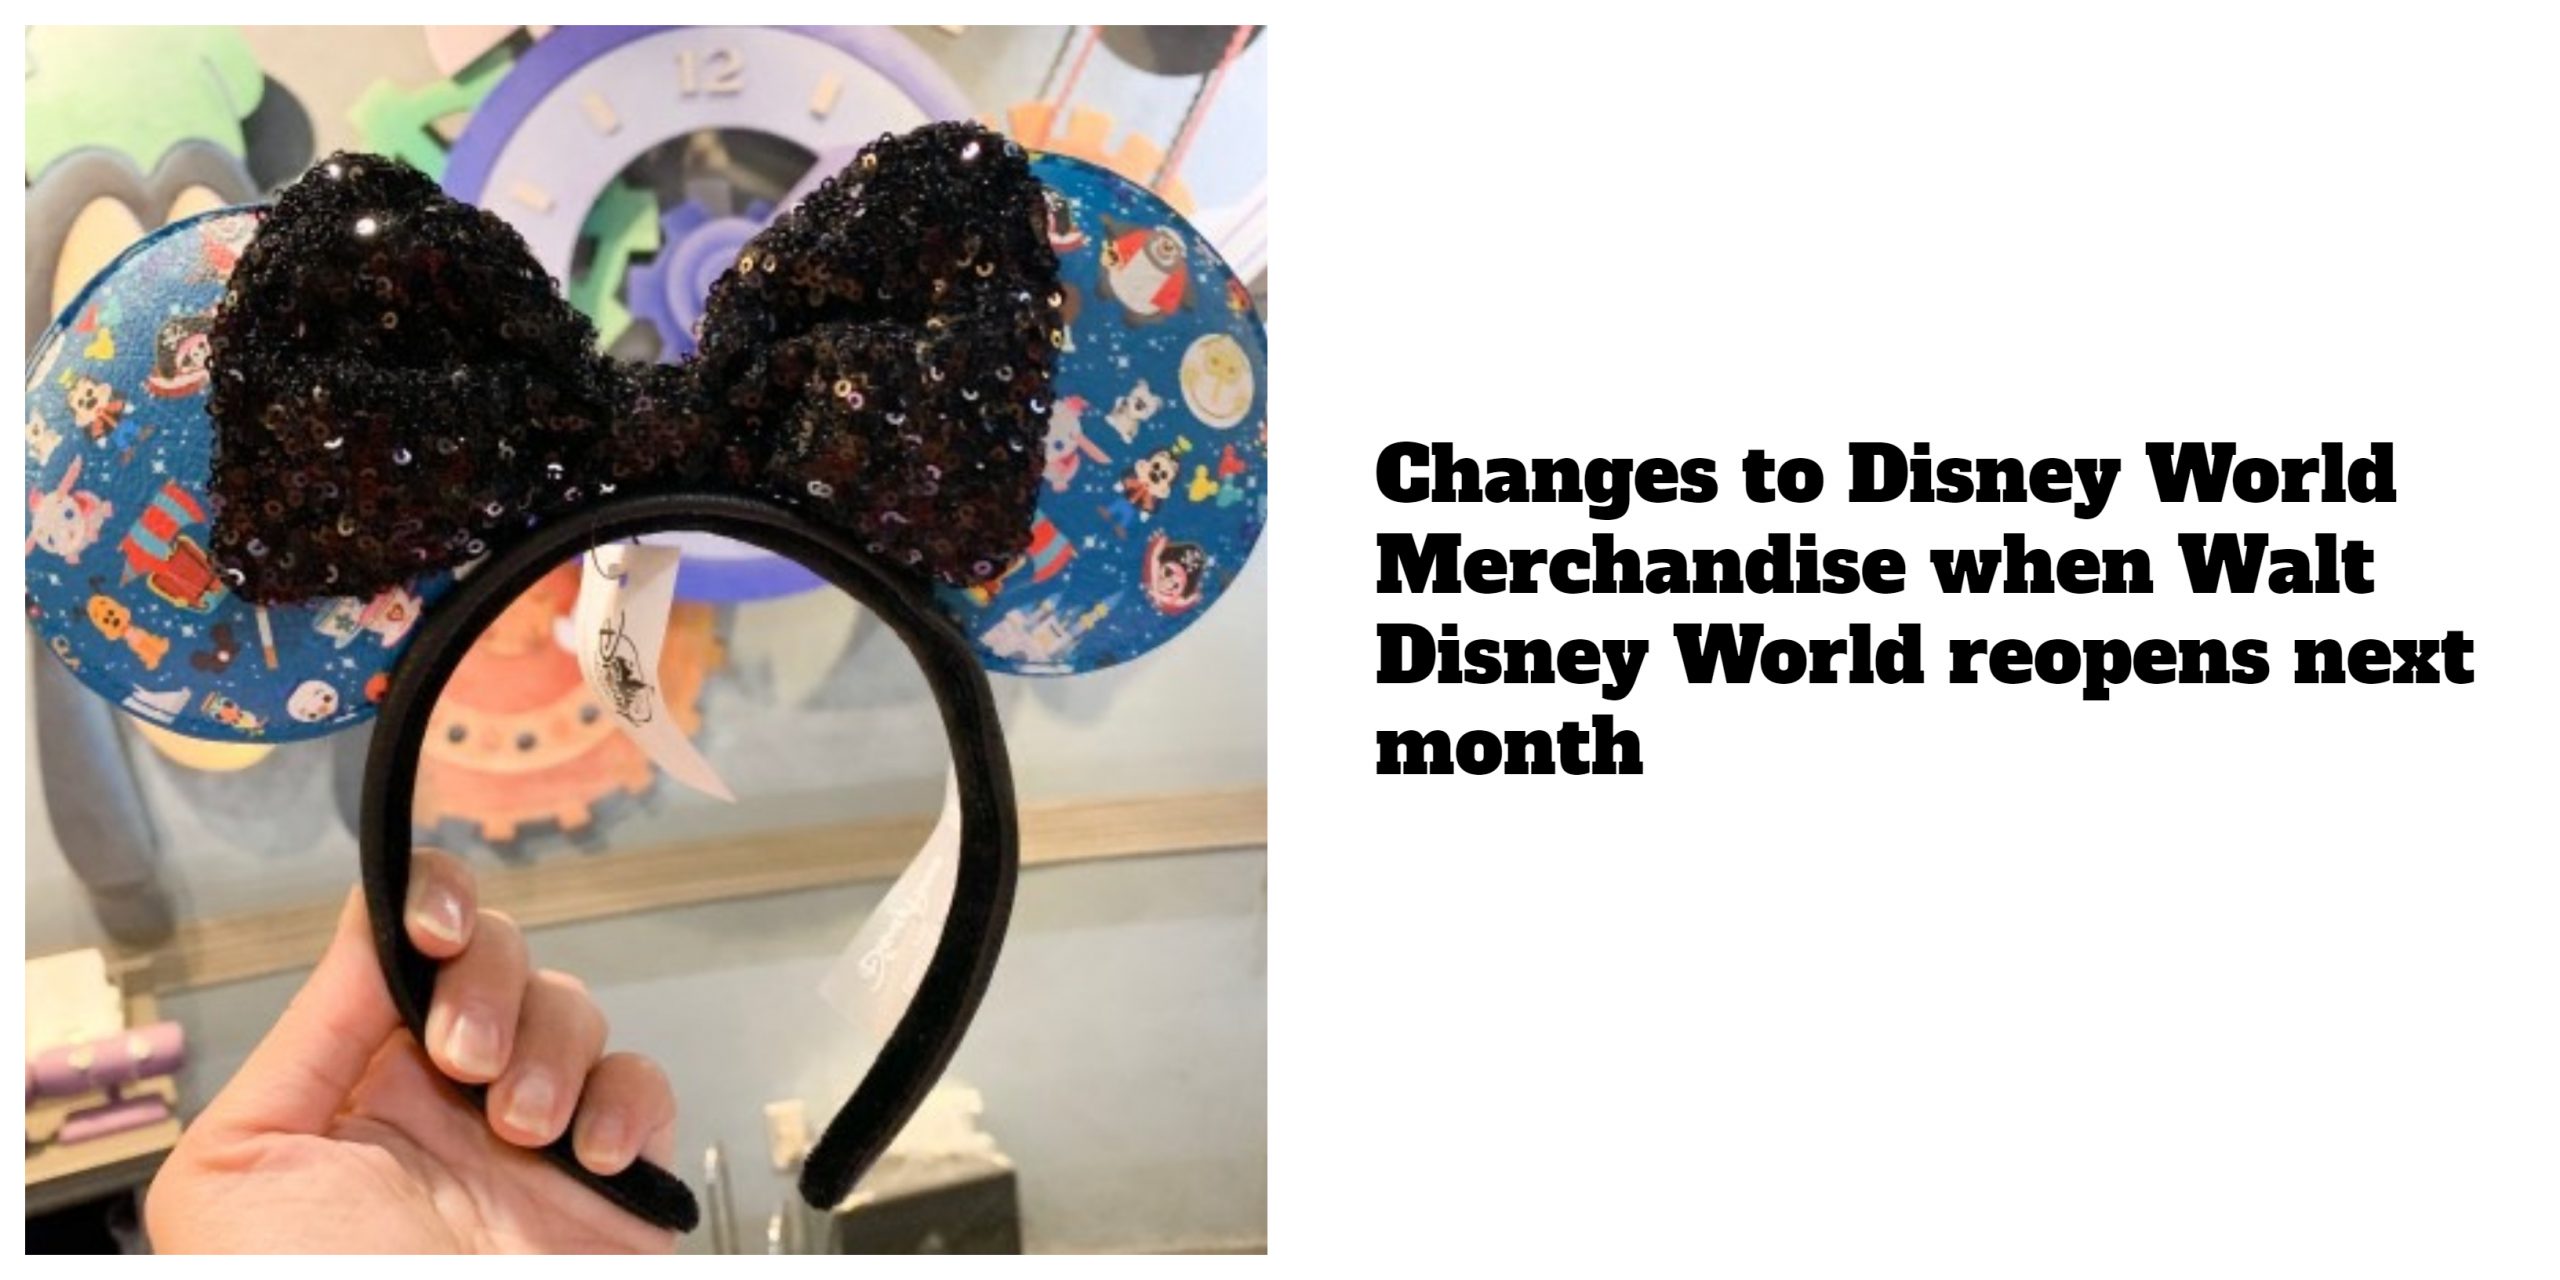 Changes to Disney World Merchandise when Walt Disney World reopens next month